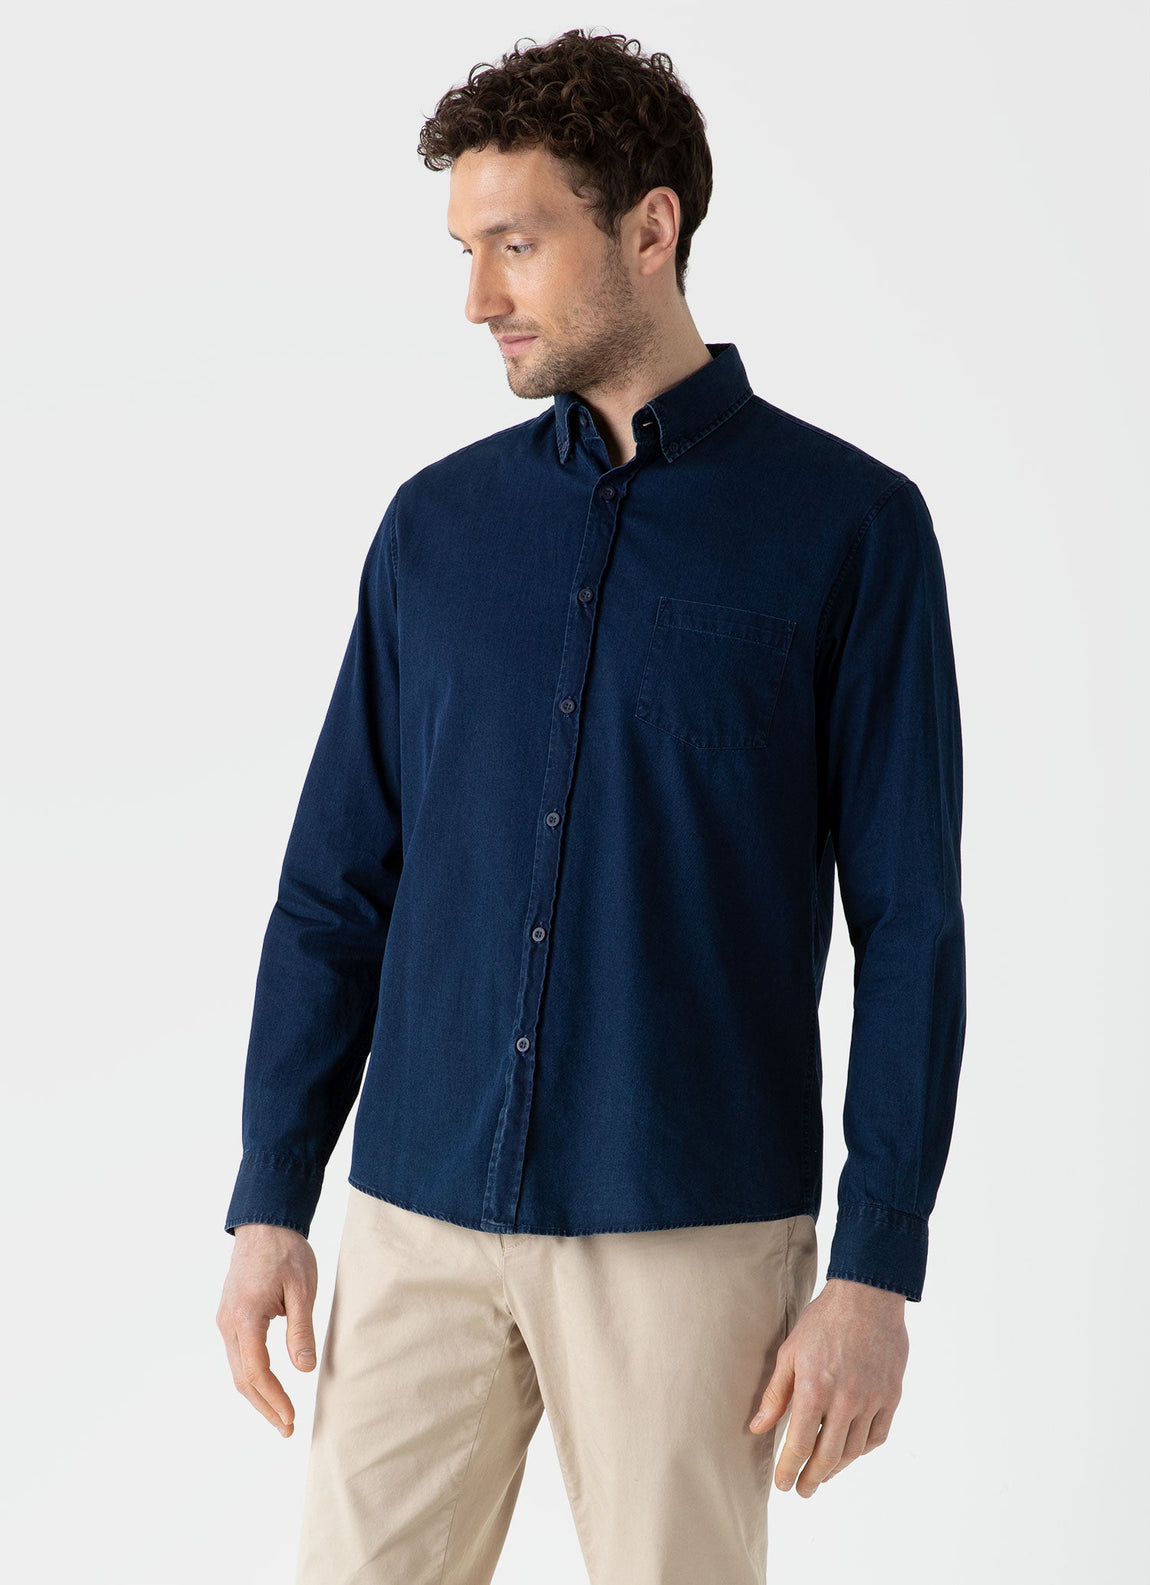 Men's Button Down Denim Shirt in Indigo